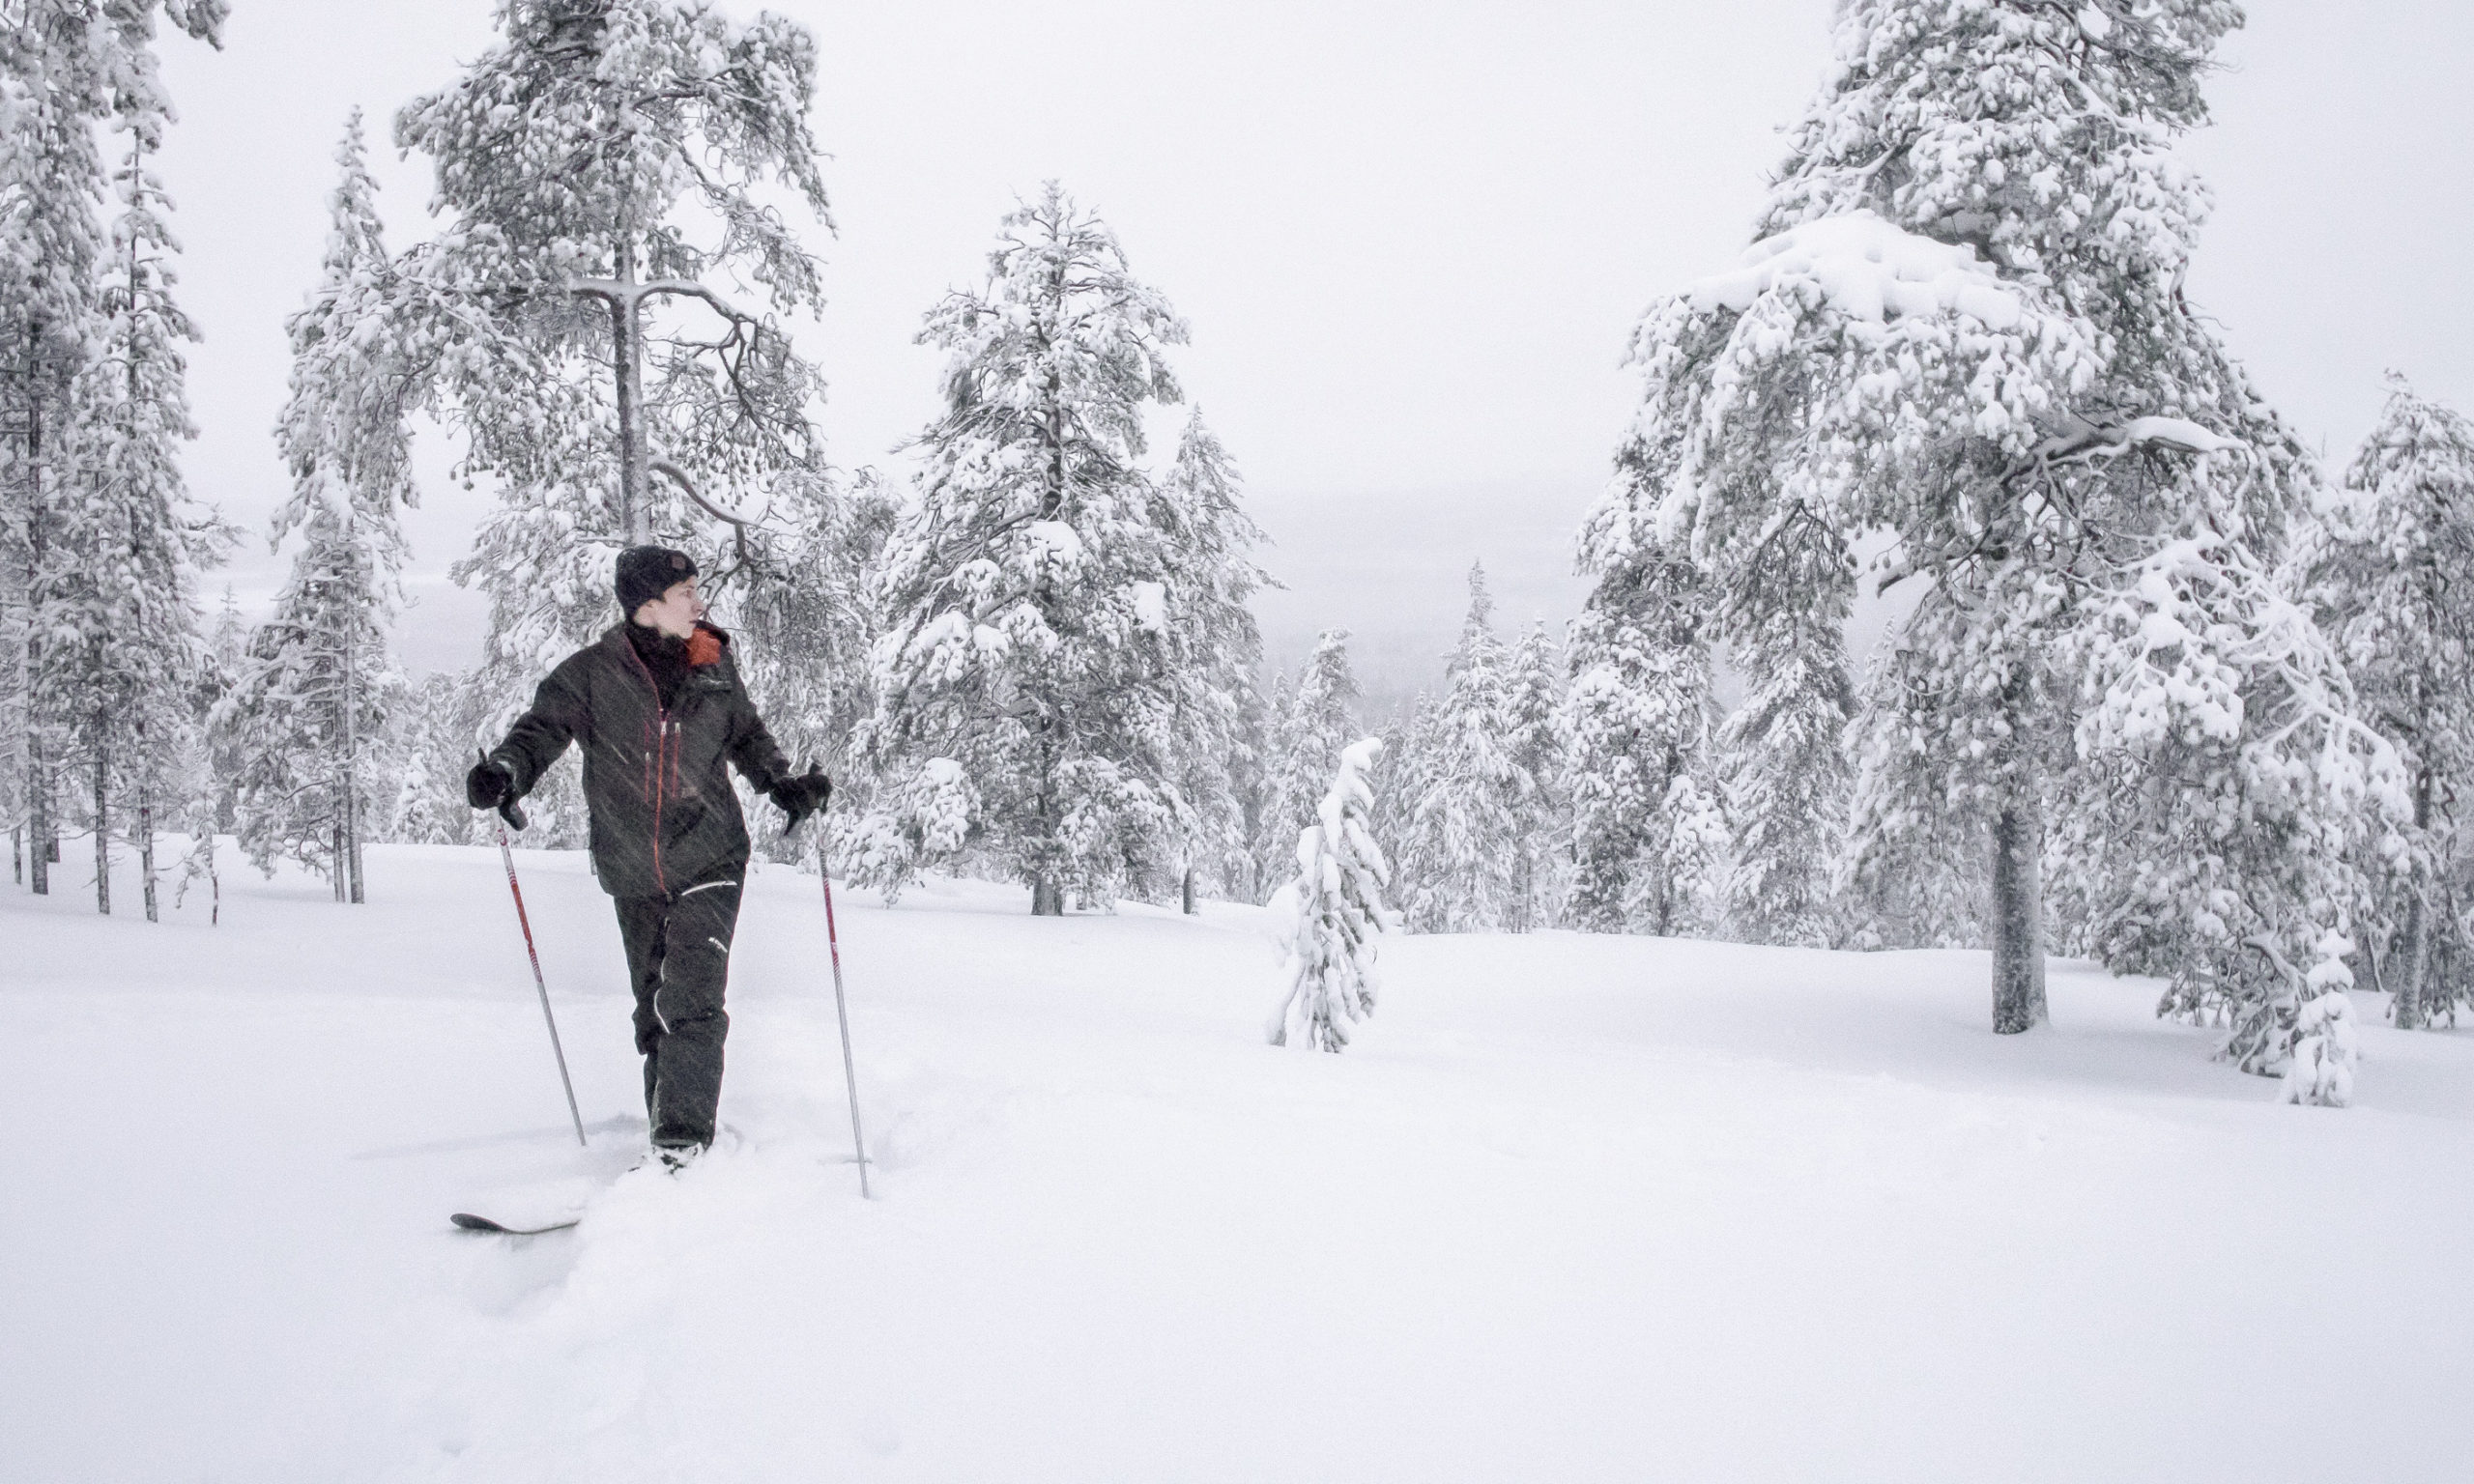 Bomba / Välinevuokraus, liukulumikengät, talviaktiviteetit, Villi Pohjola / Wild Nordic Finland @wildnordicfinland